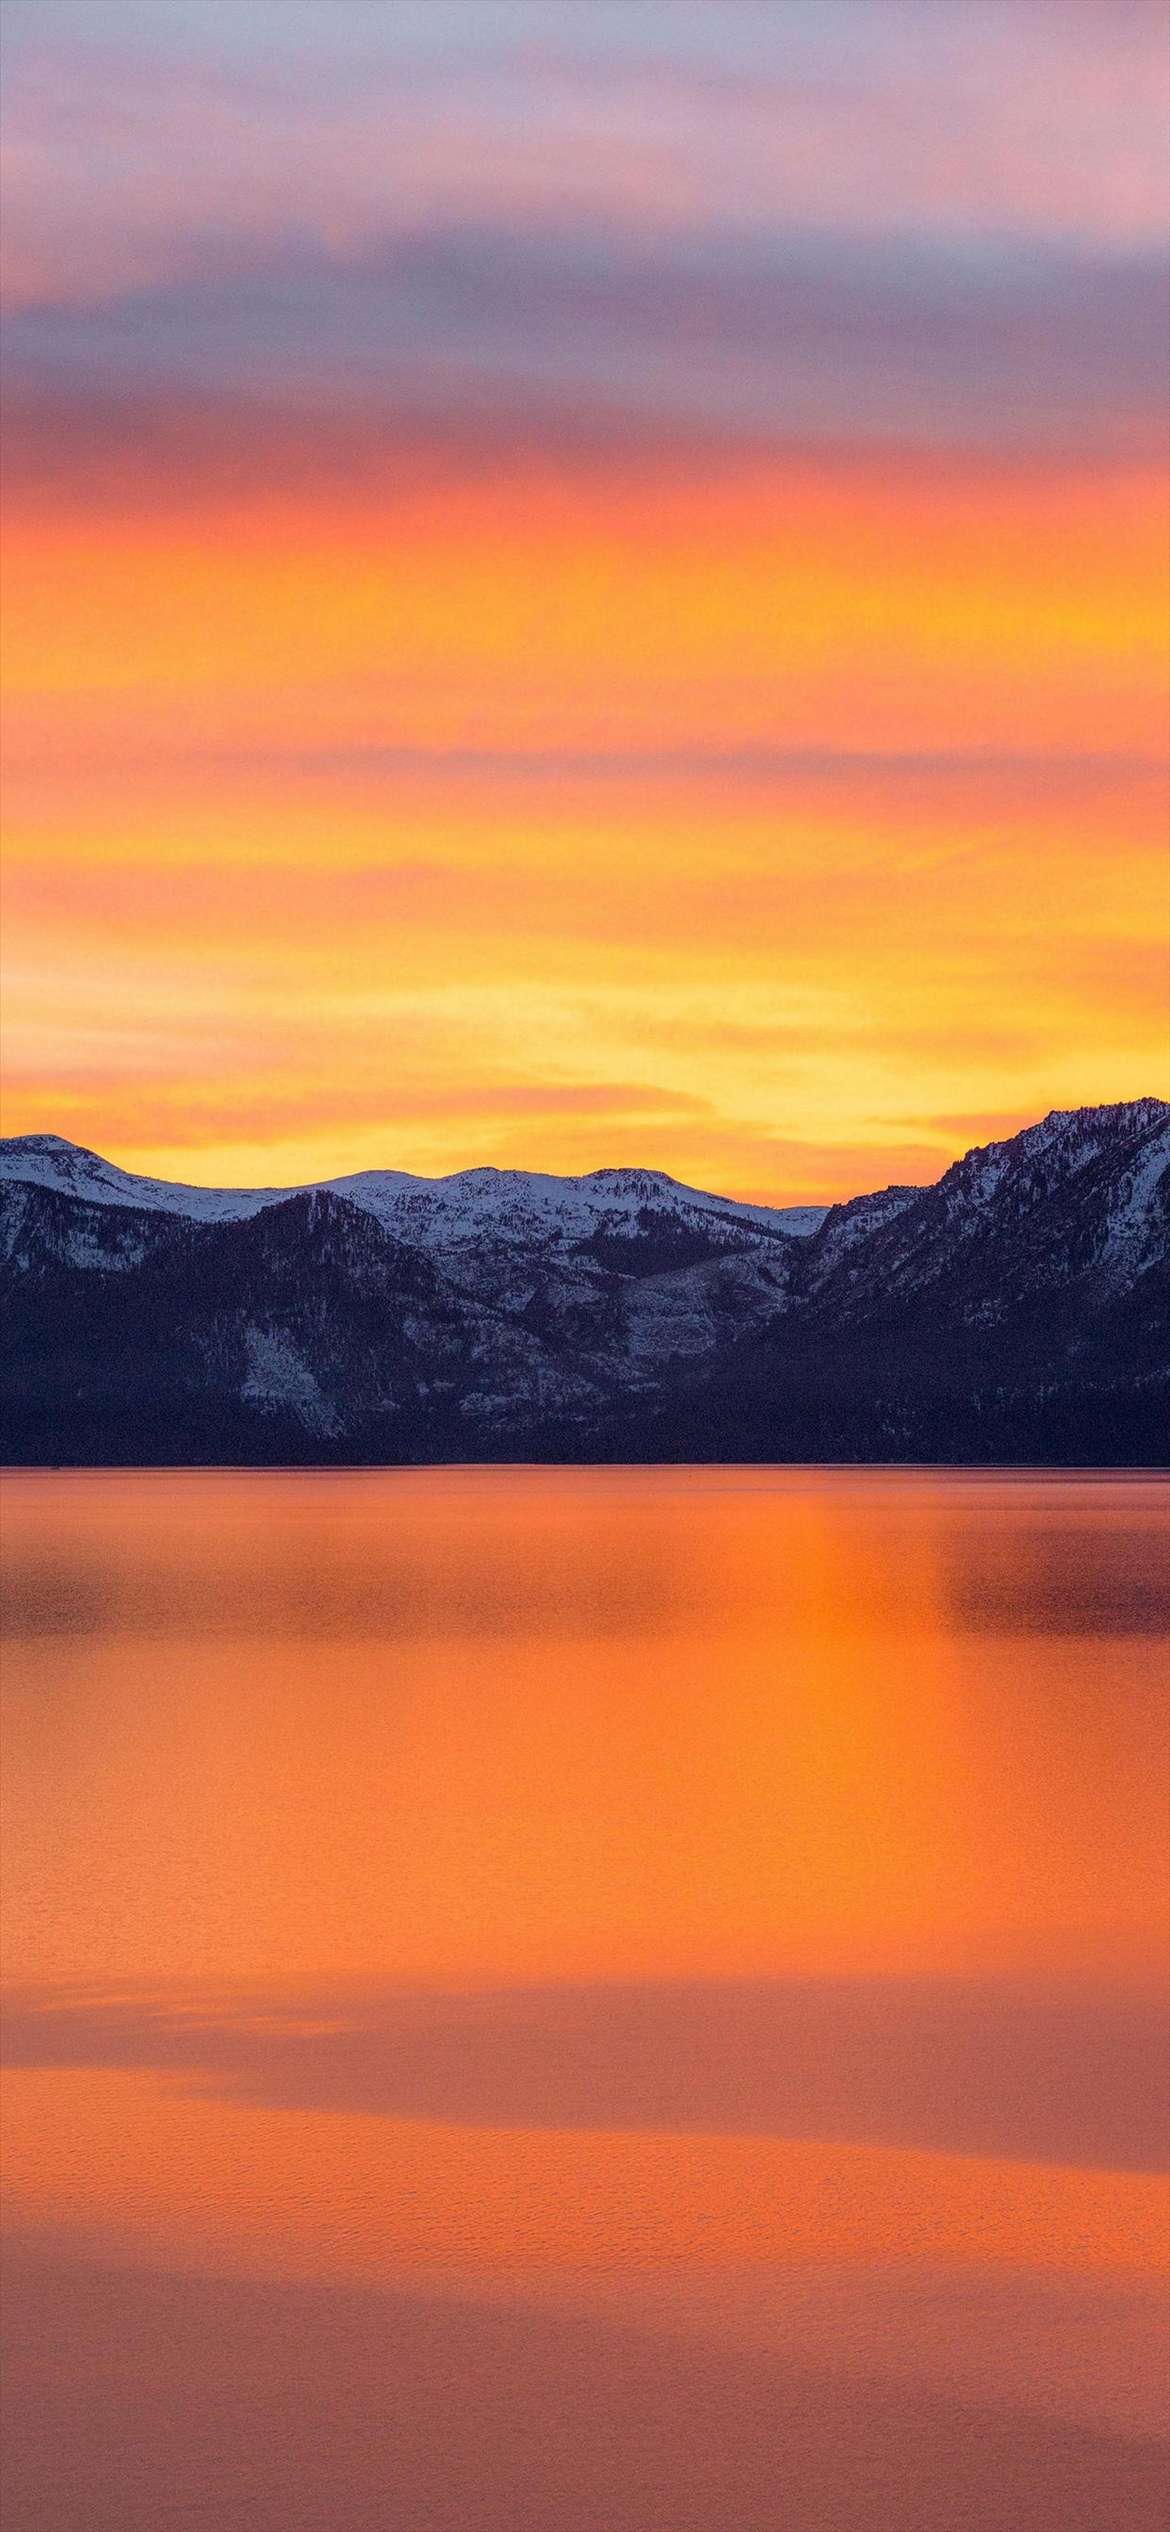 雪山とオレンジの夕焼けと湖 Iphone 12 Pro スマホ壁紙 待ち受け スマラン